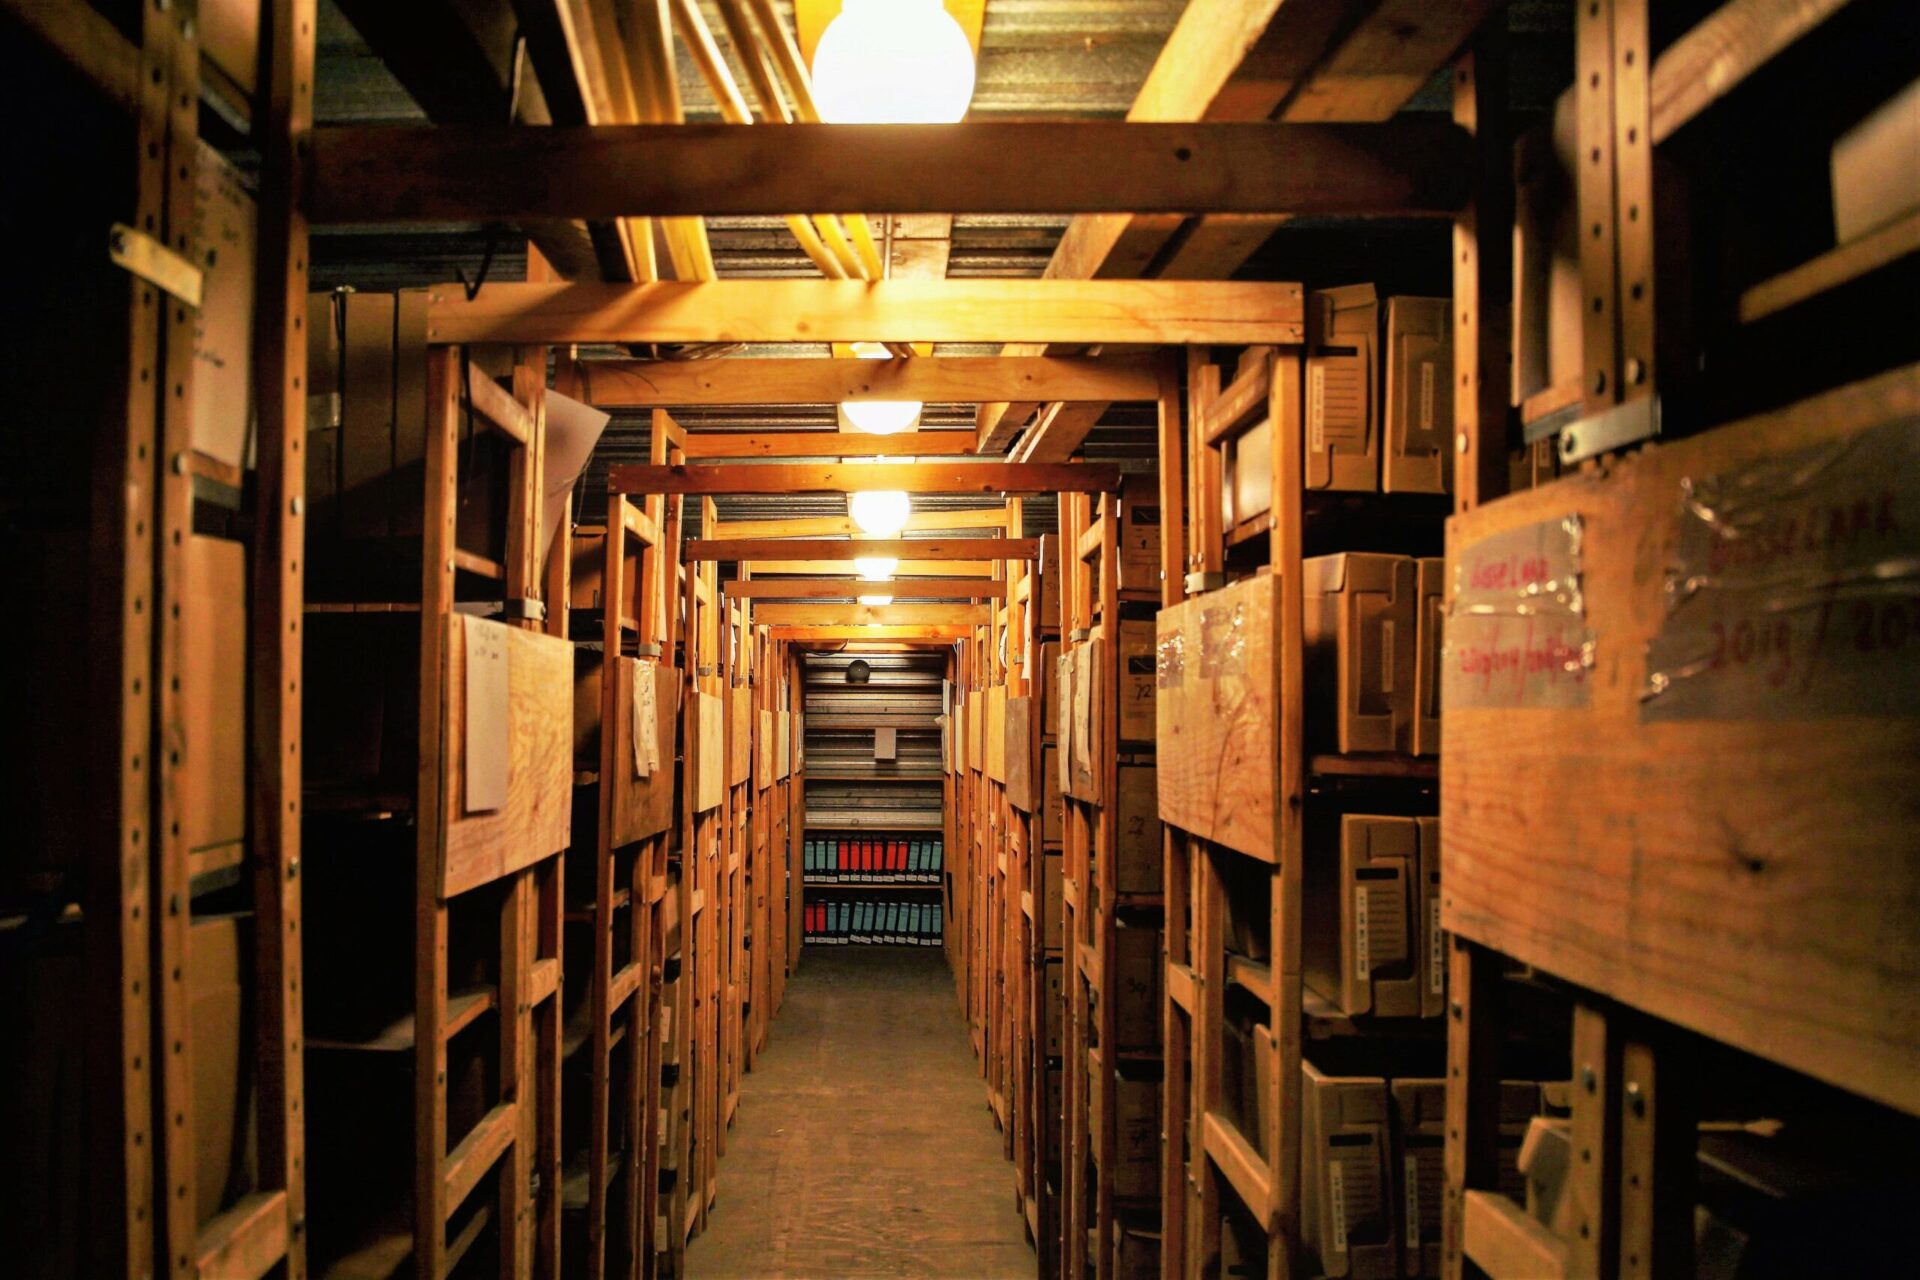 Het archief van Verhuisbedrijf Nobbe, opgeslagen in de onze kelder. Het archief gaat terug tot onze oprichting in 1933.